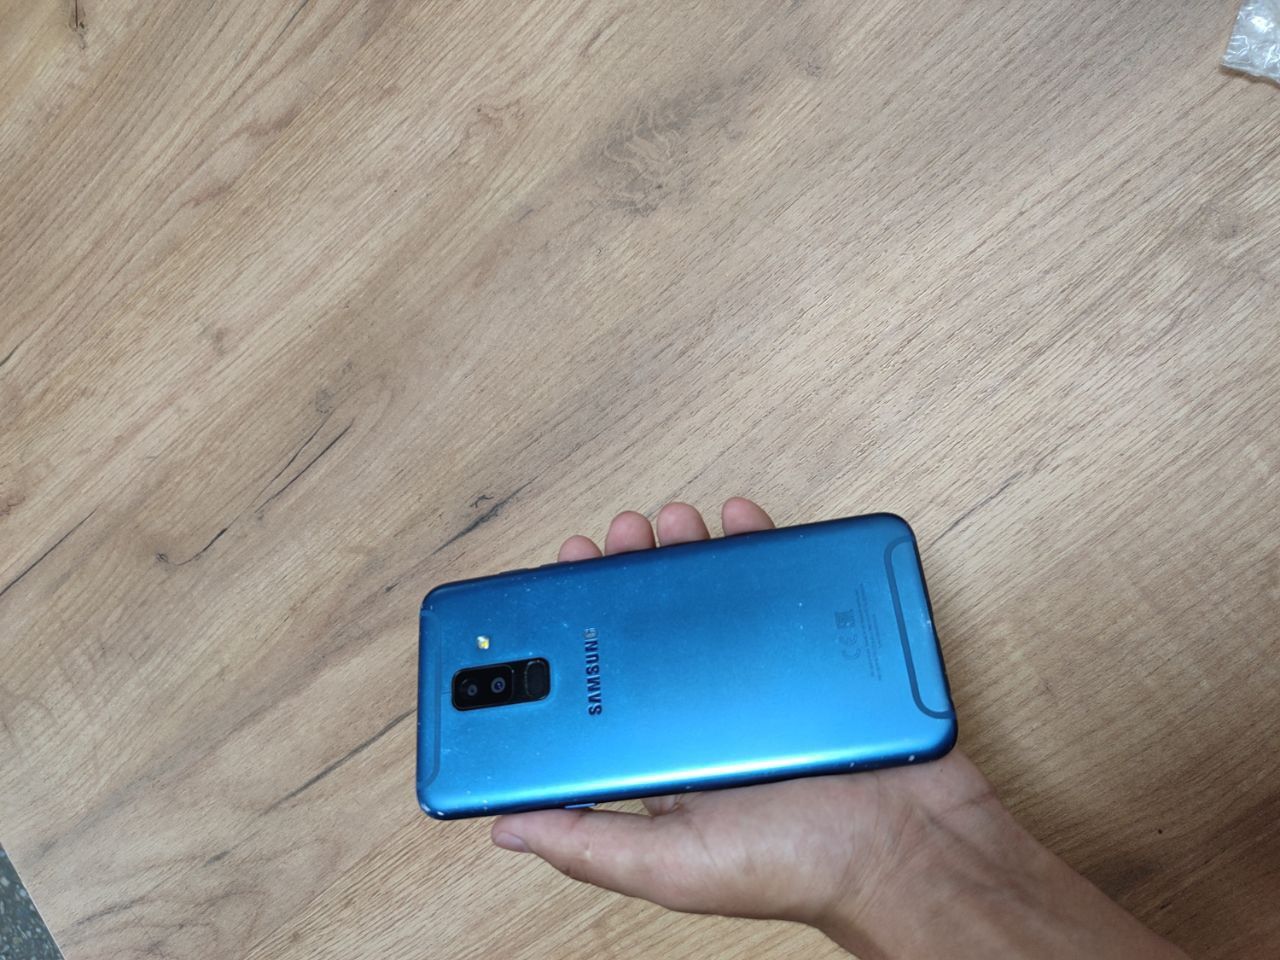 Samsung A 6 plus